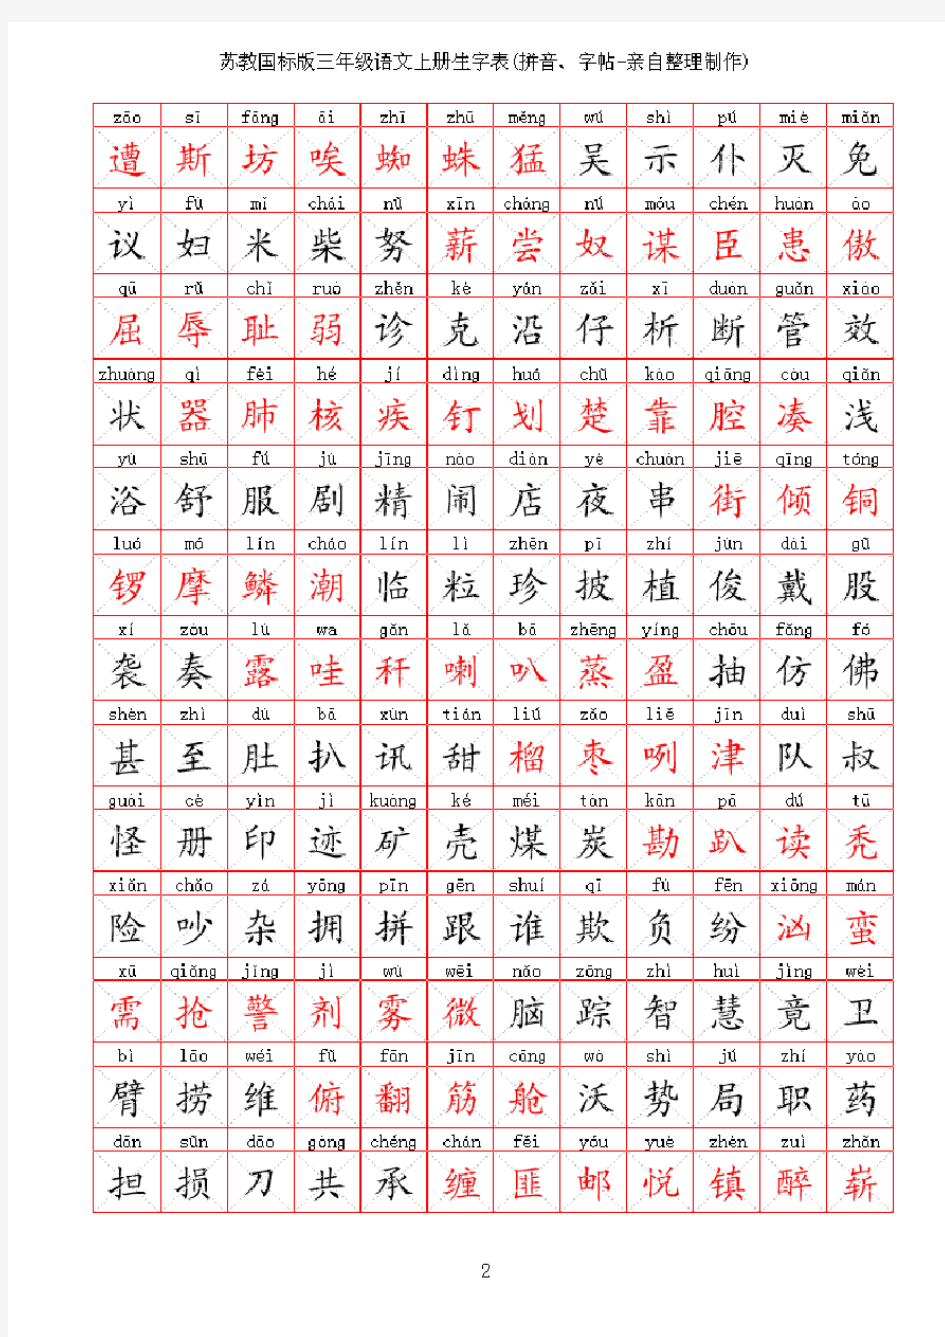 苏教版小学语文三年级生字表(拼音、字帖-亲自整理制作)